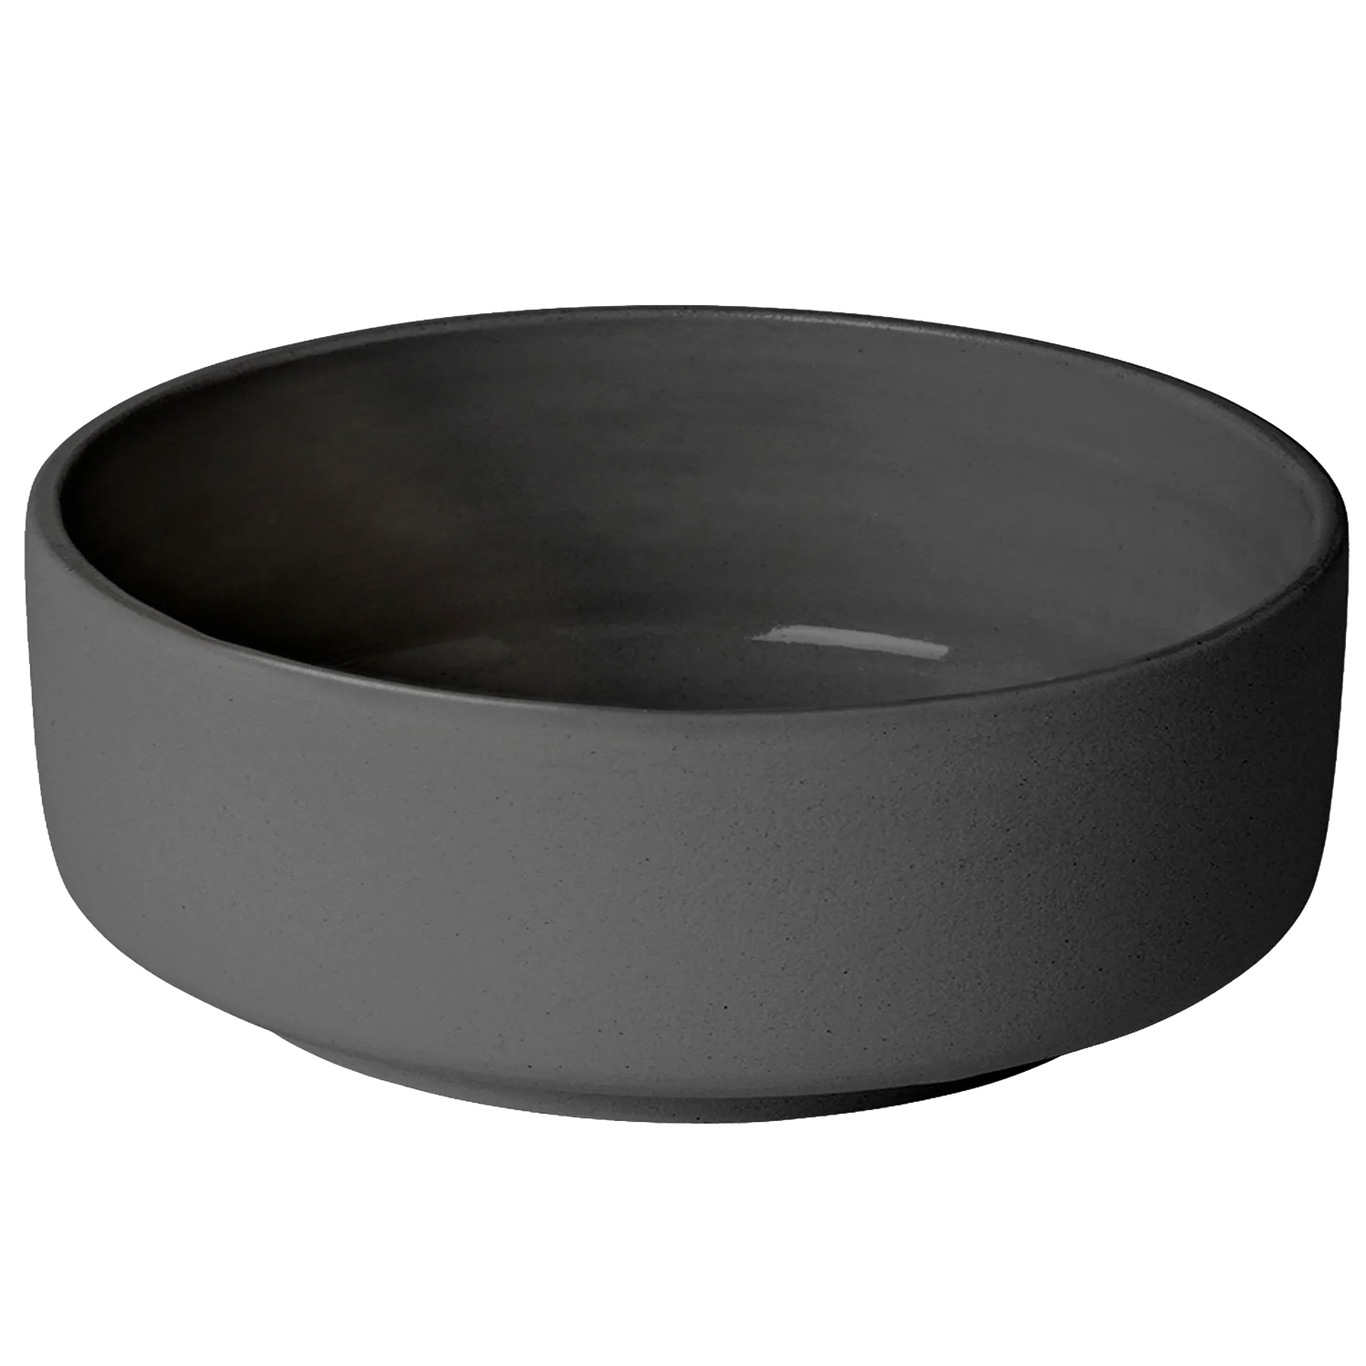 Ceramic Pisu Bowl Ø16 cm, Ink Black